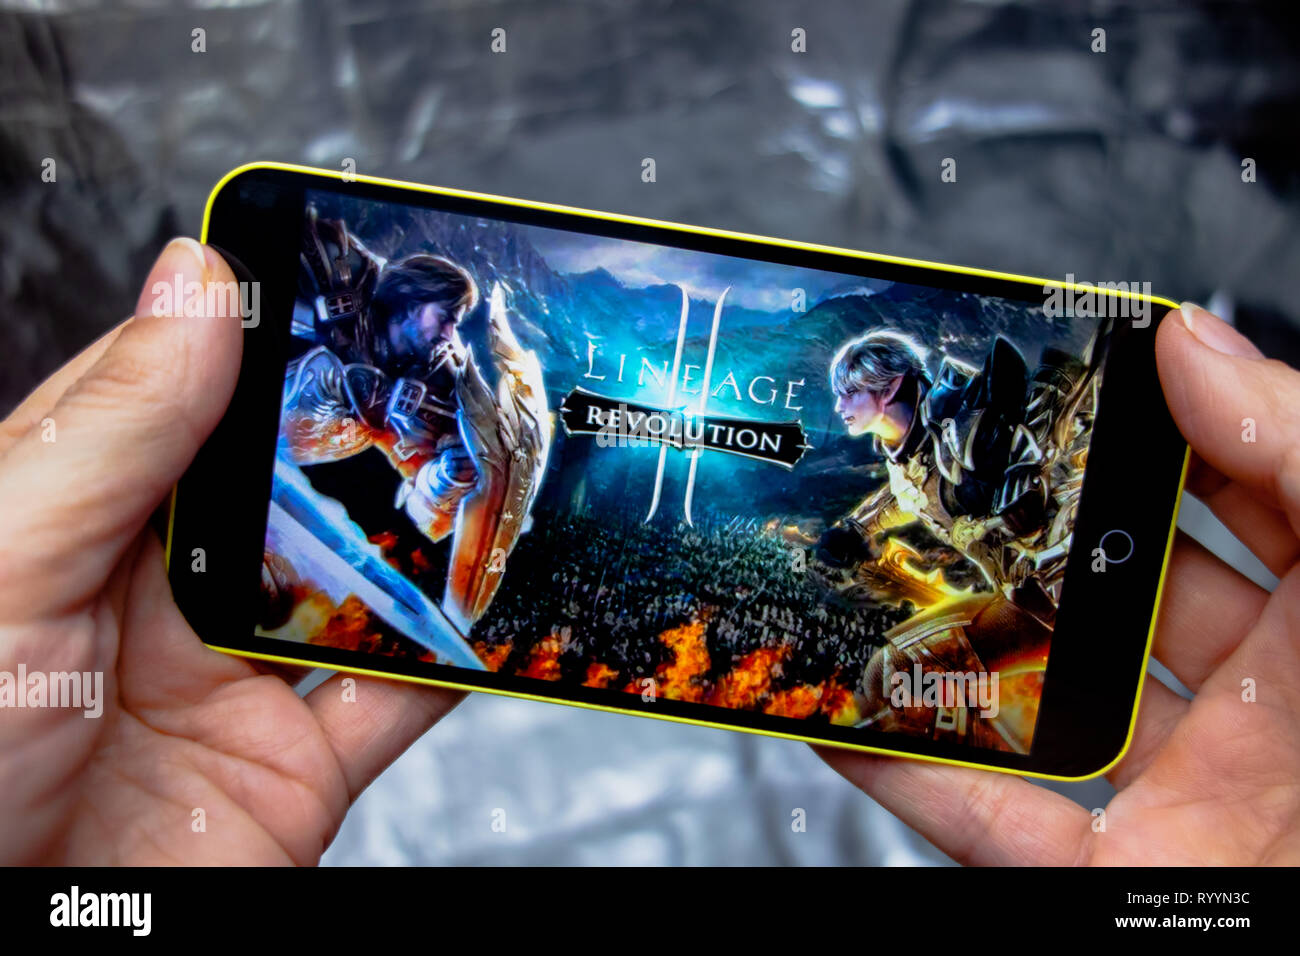 Berdyansk, Ucraina - 16 Marzo 2019: mani di uno smartphone con lineage 2 revolution gioco sullo schermo di visualizzazione. Foto Stock